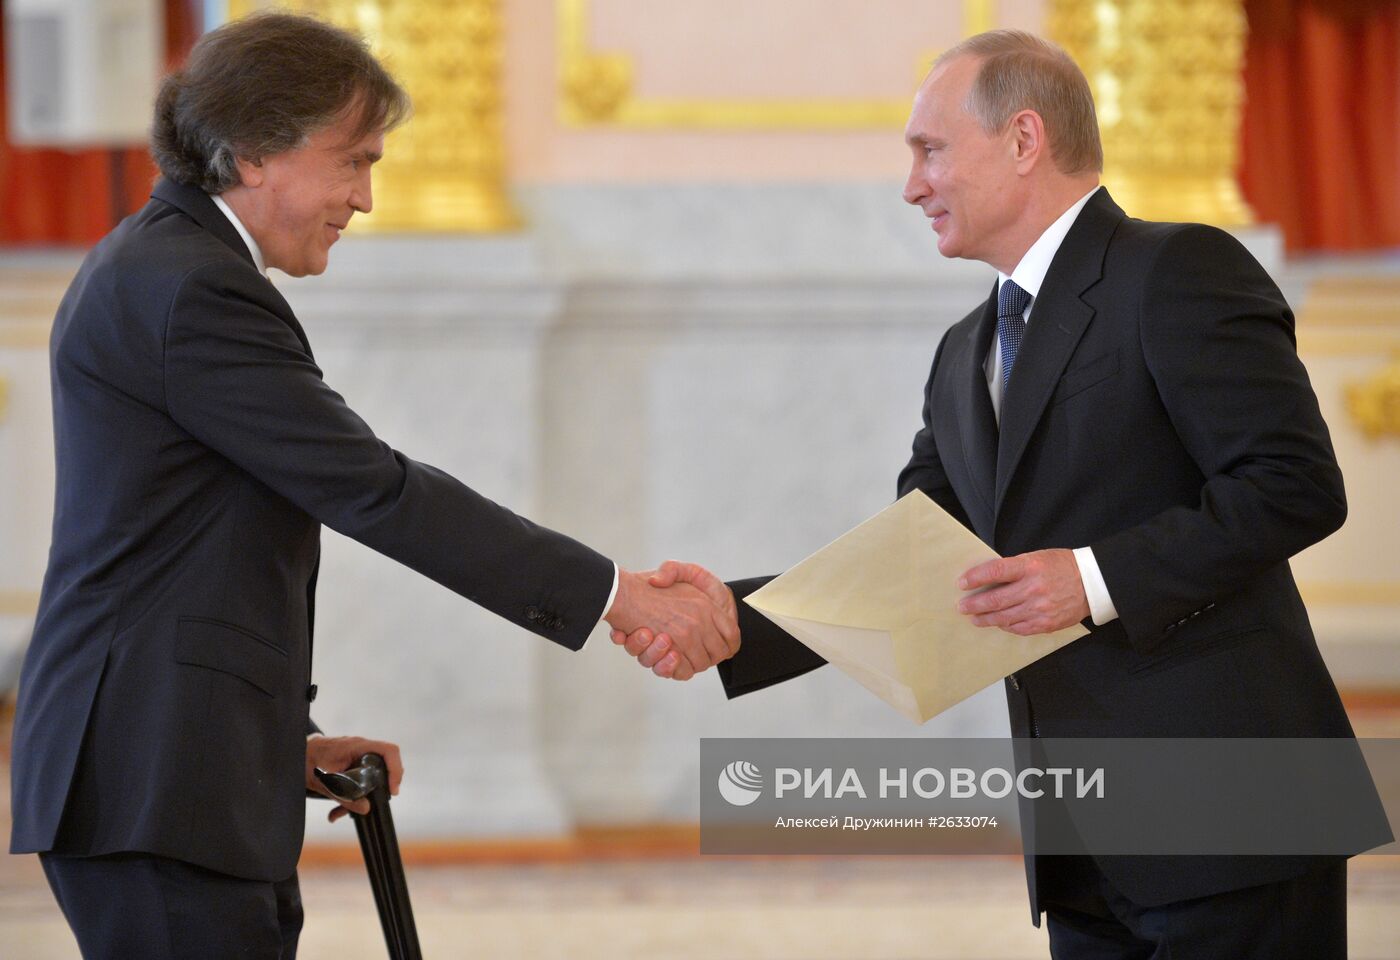 Вручение верительных грамот послами иностранных государств президенту РФ В.Путину